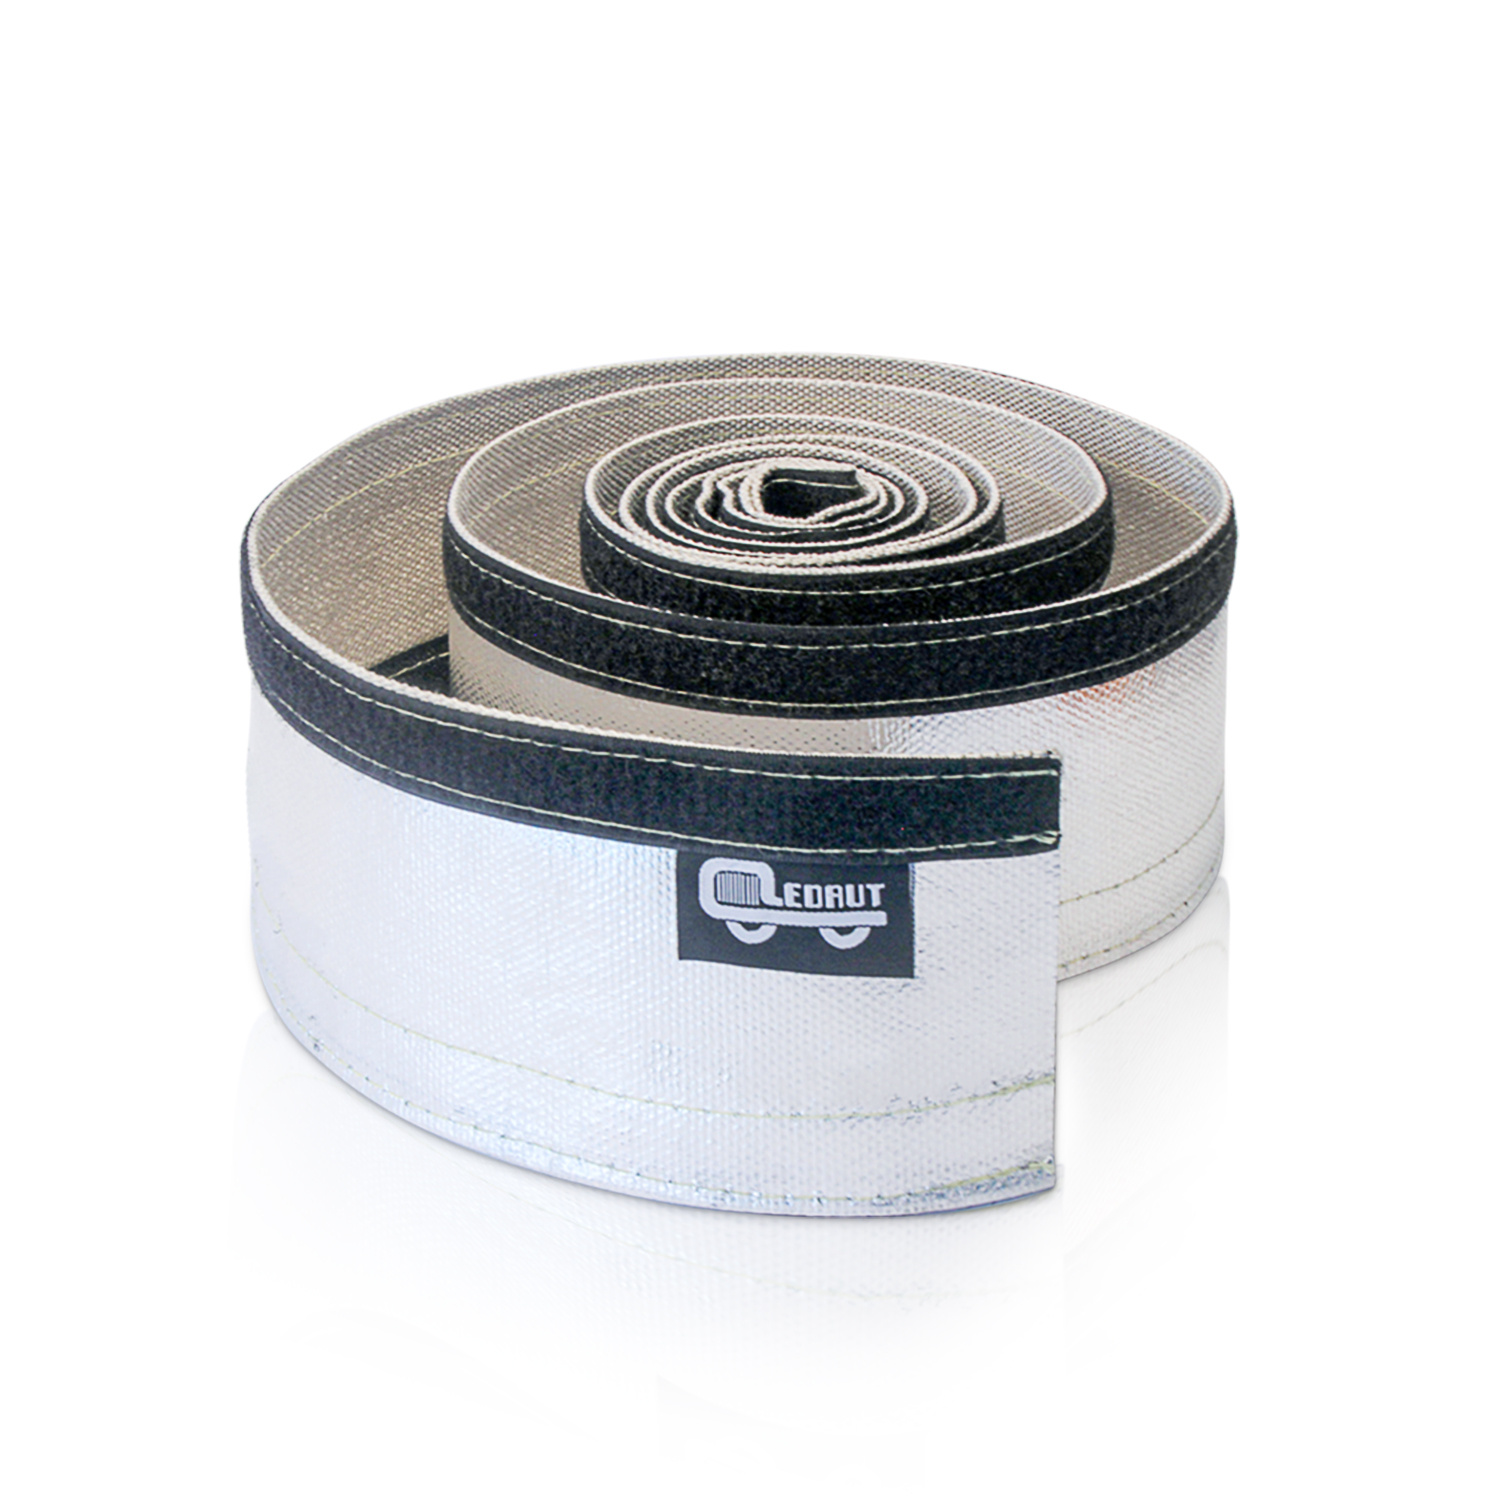 Aluminized Heat Sheath Heat Wrap Wire Shield Sleeve --3/4